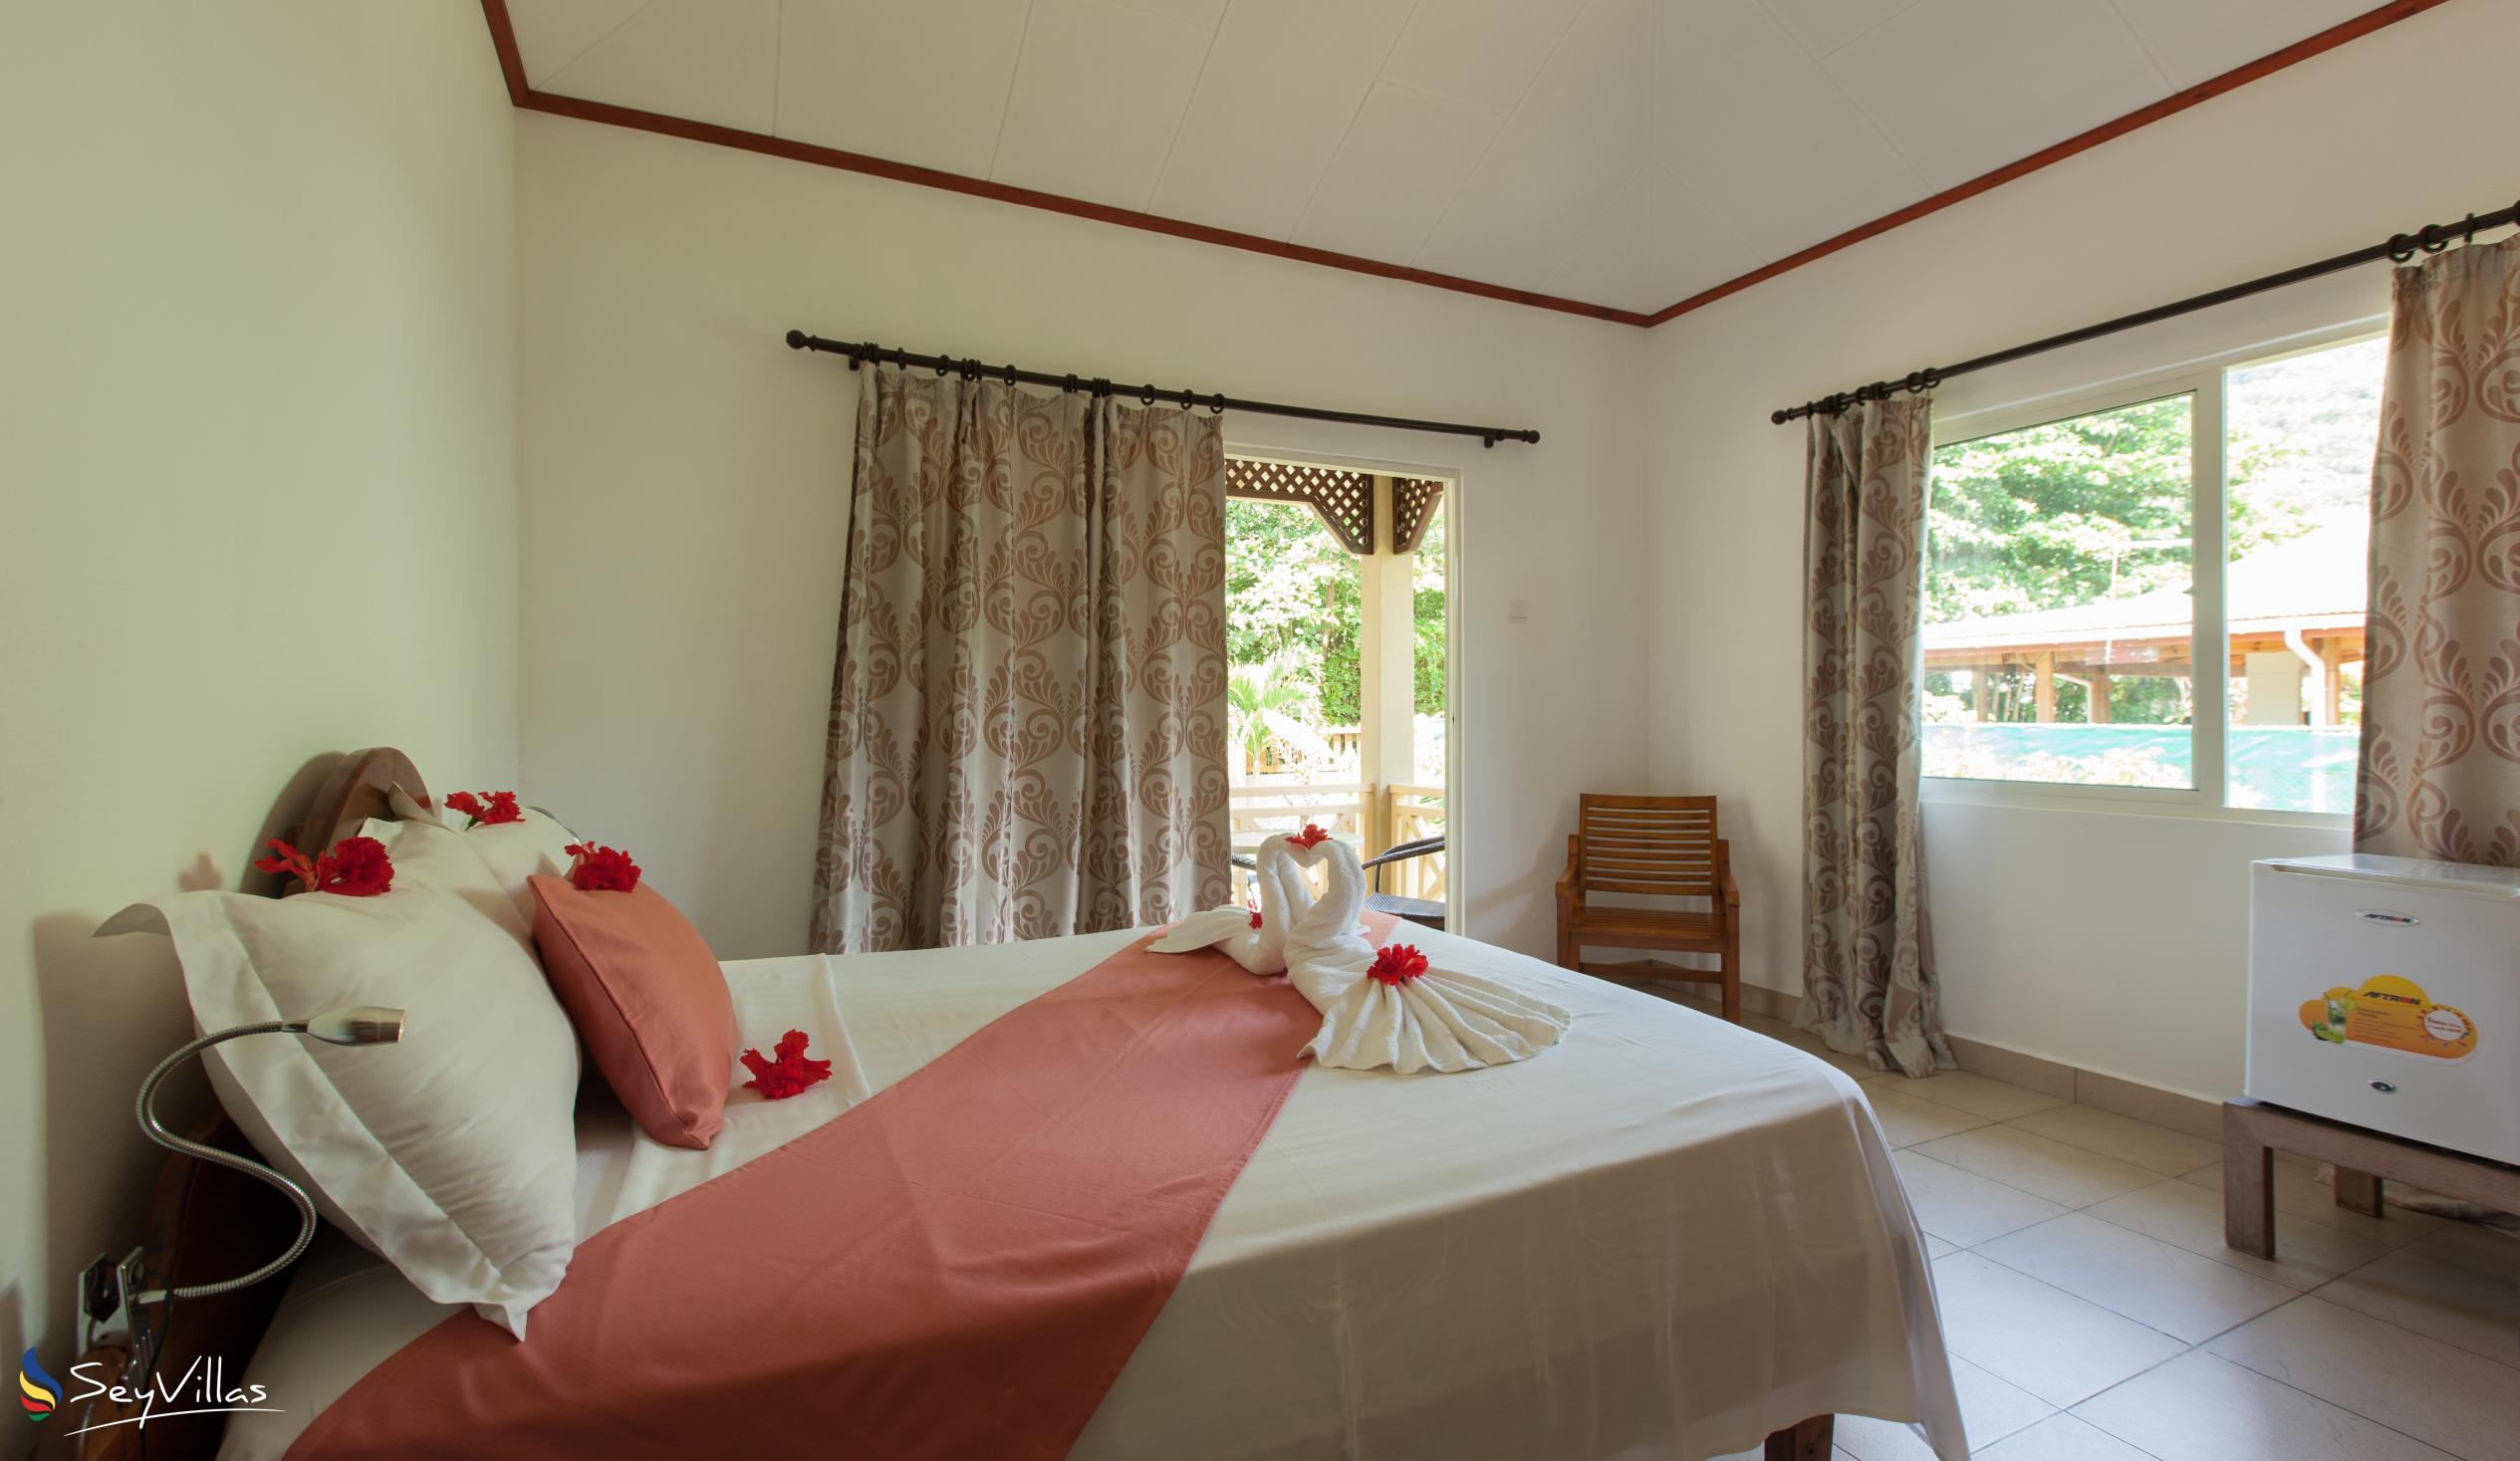 Photo 21: Hostellerie La Digue - 3-Bedroom Chalet - La Digue (Seychelles)